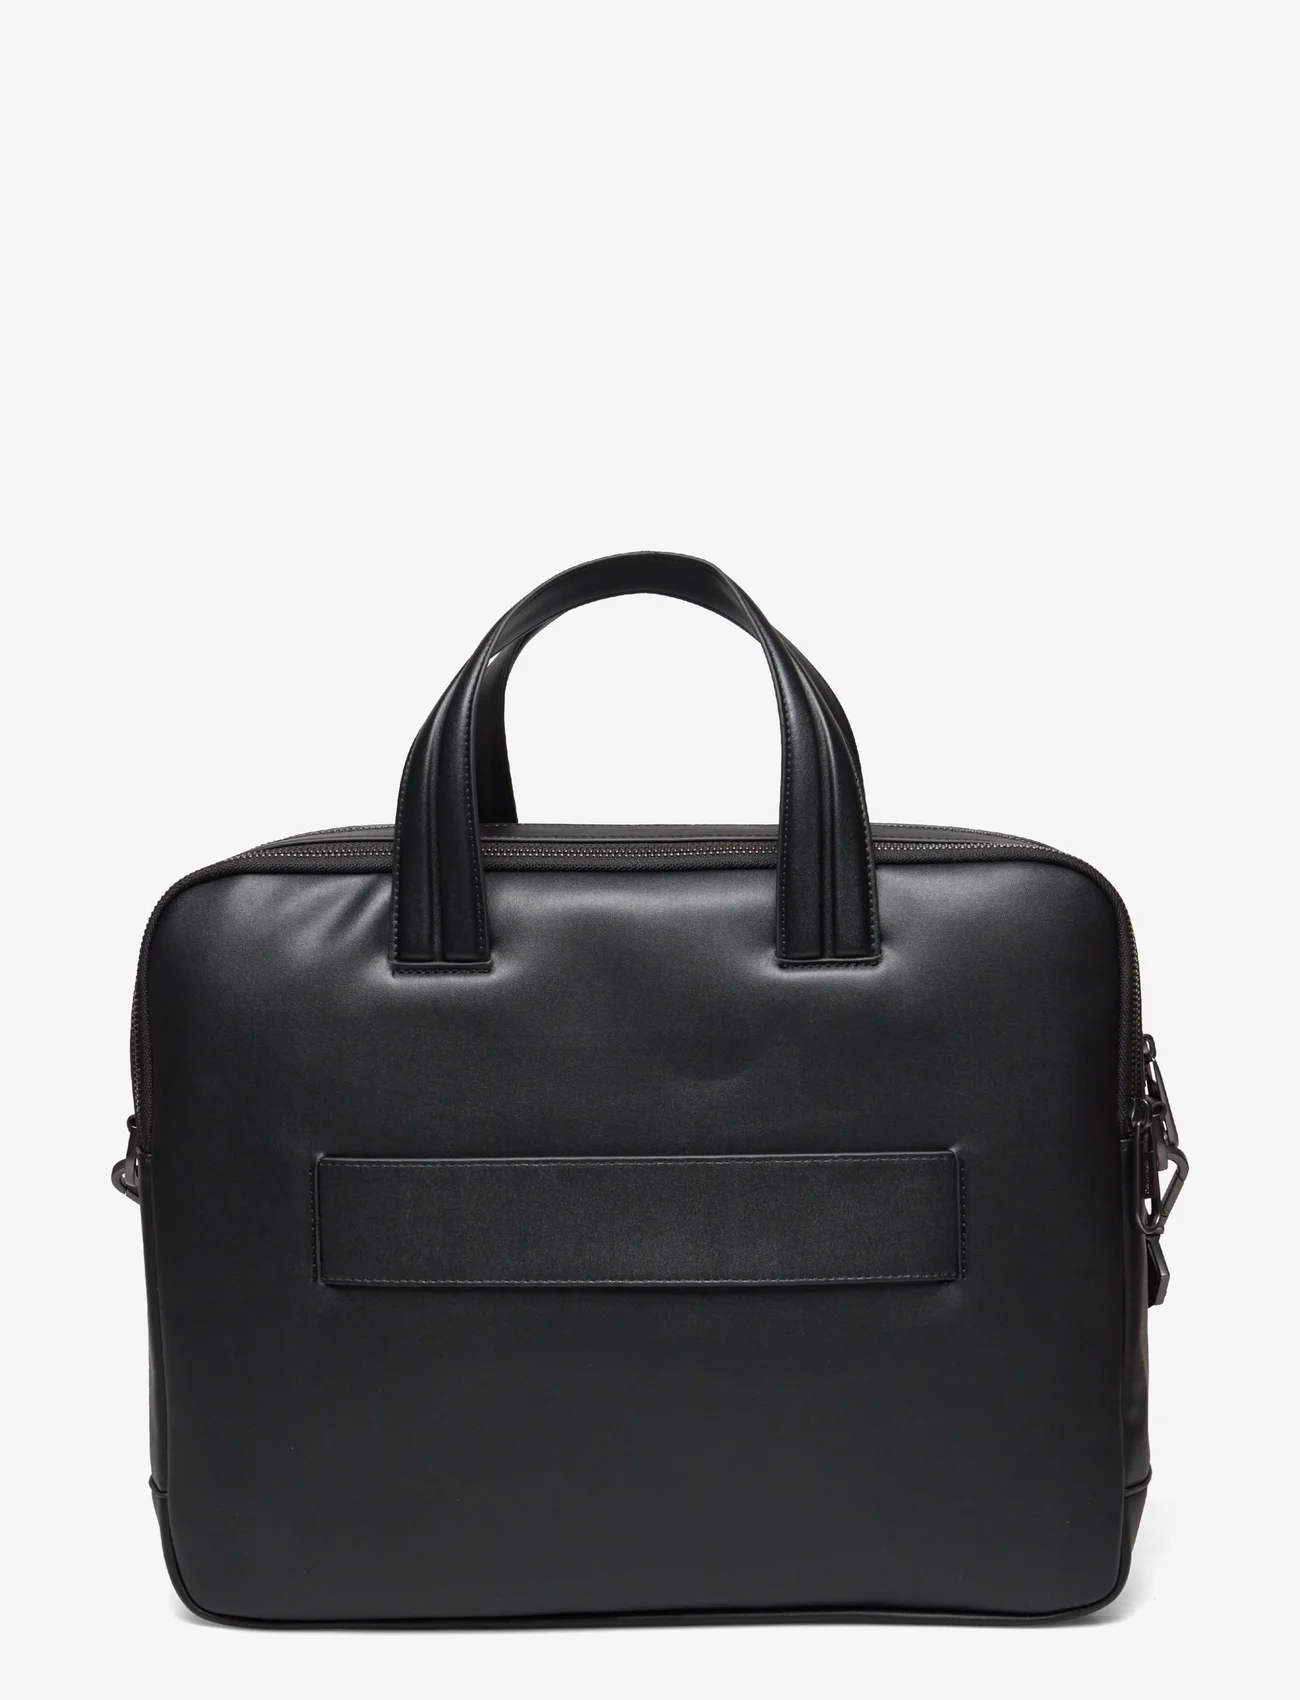 Calvin Klein - CK SET 2G LAPTOP BAG - laptop bags - ck black - 1